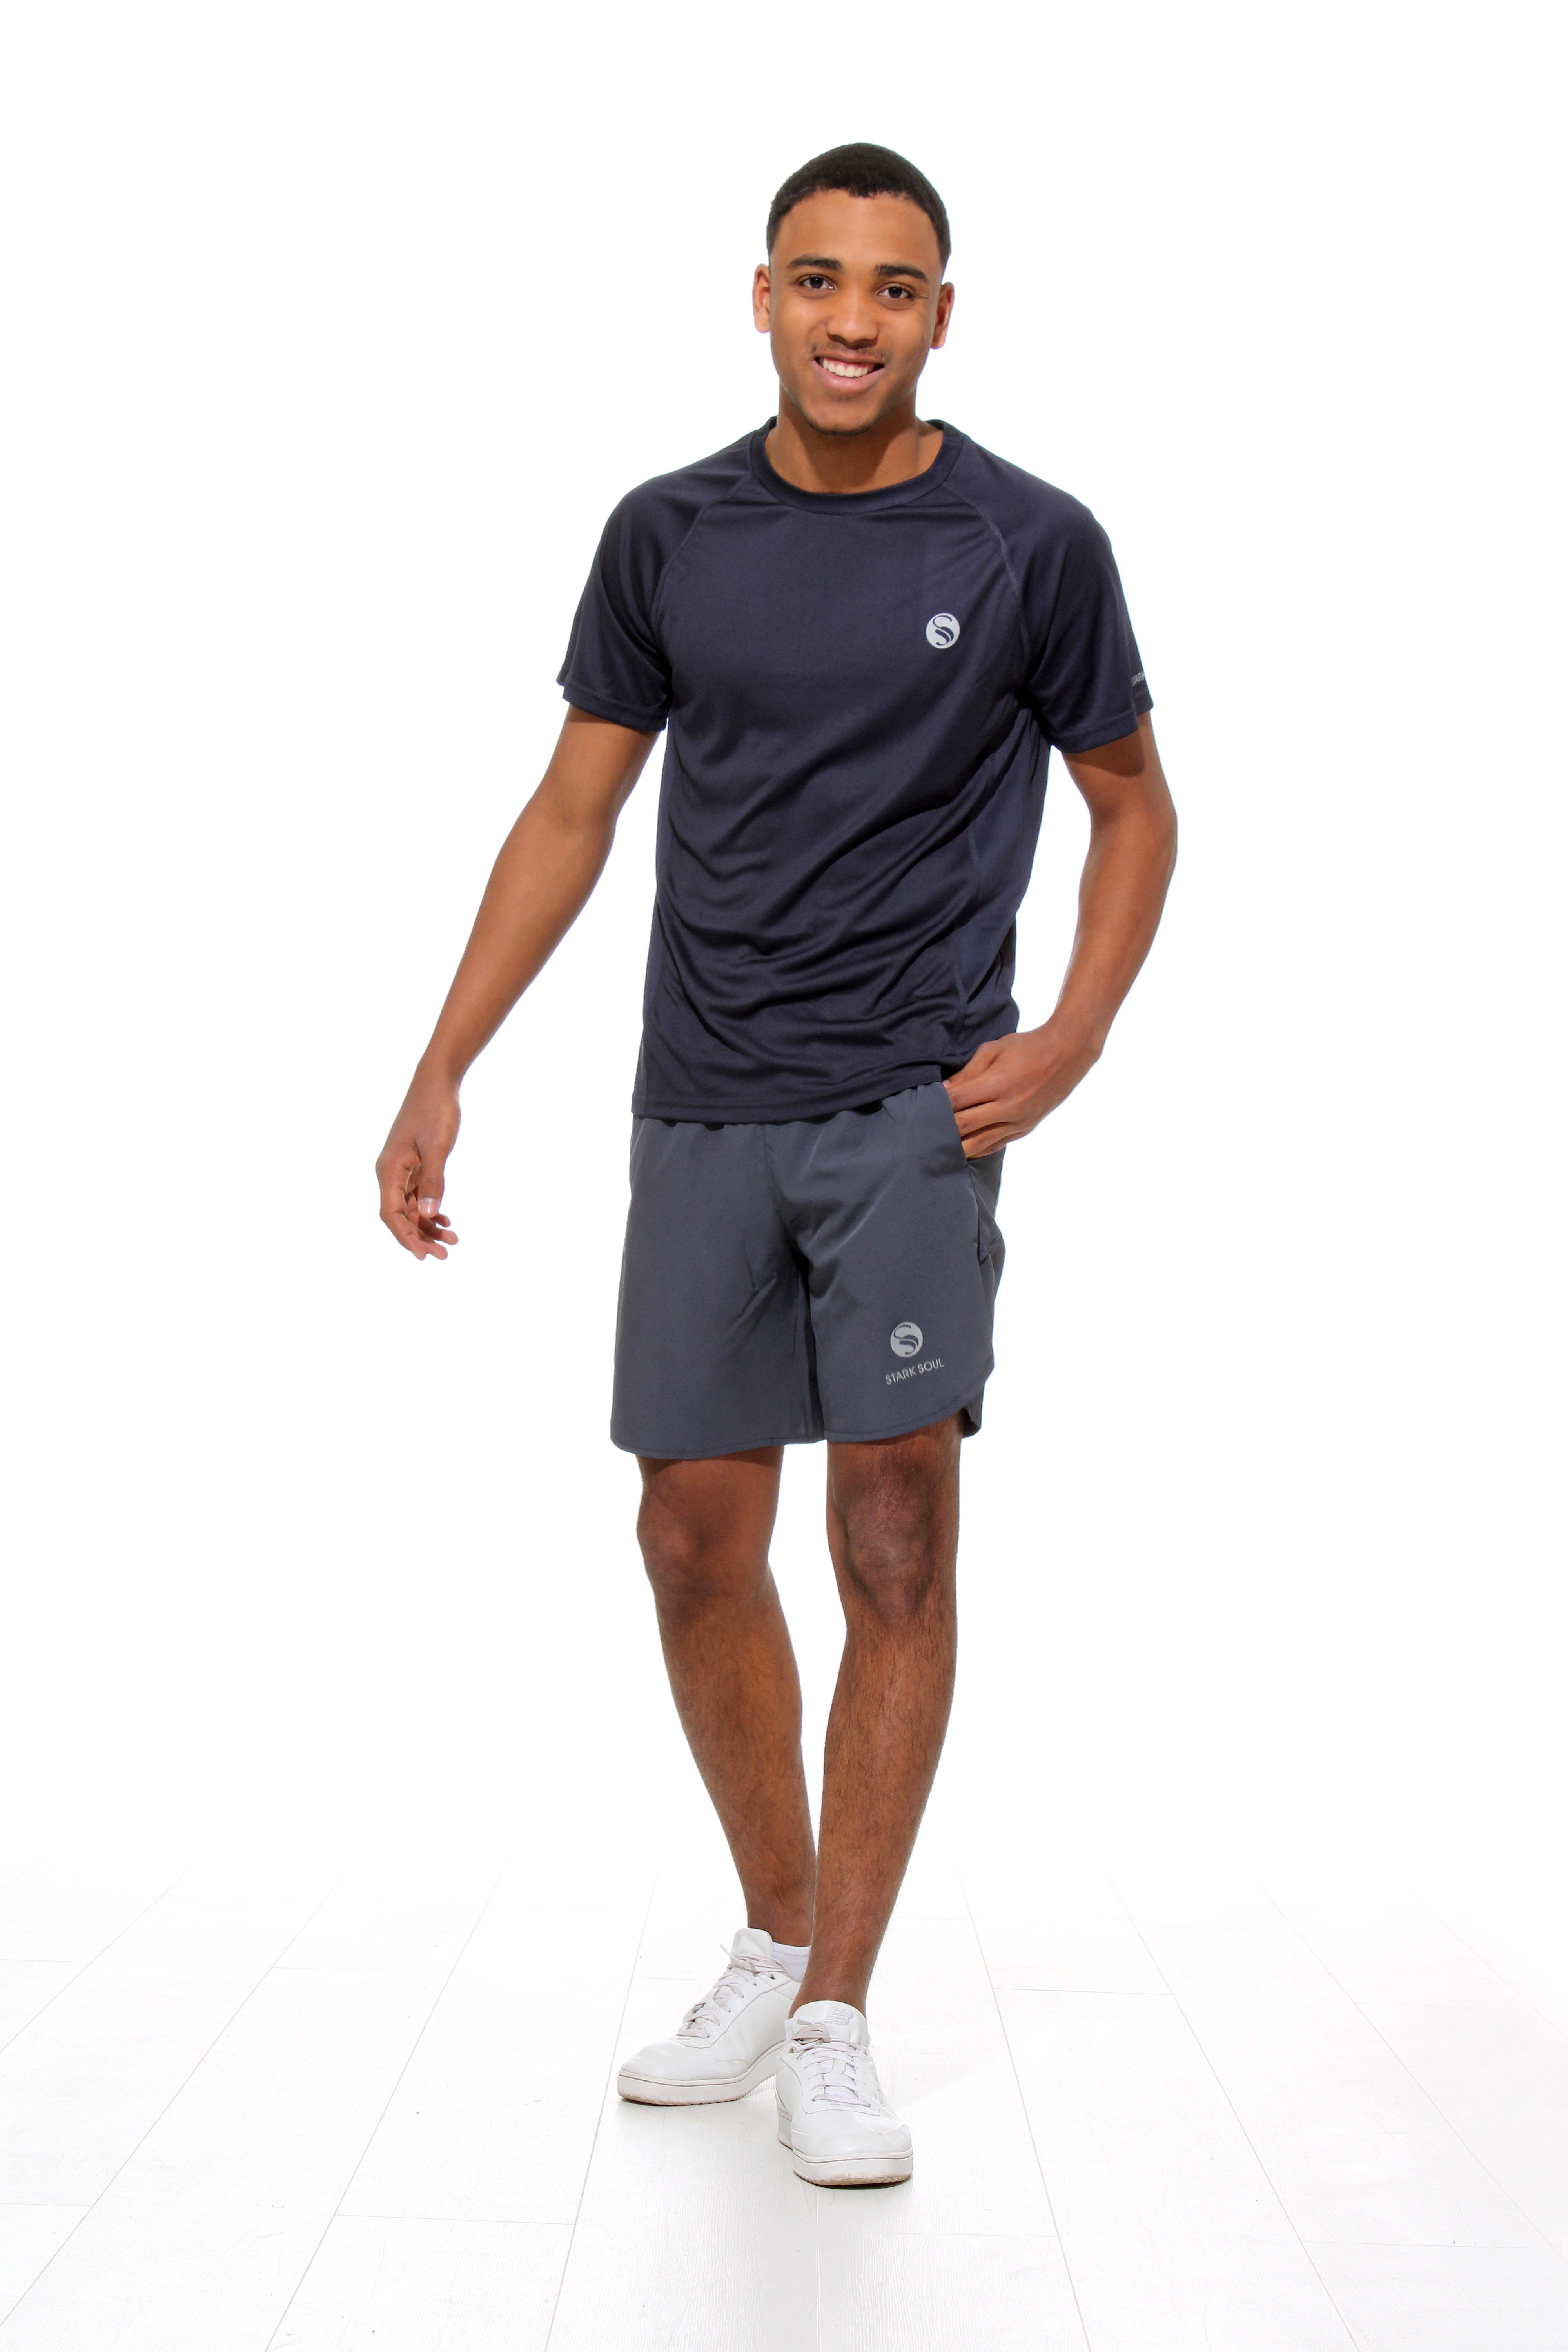 Stark Soul® Funktionsshirt Sportshirt, Fitness "Reflect", seitlichen Mesh-Einsätzen Kurzarm T-Shirt Grau mit Funktionsshirt